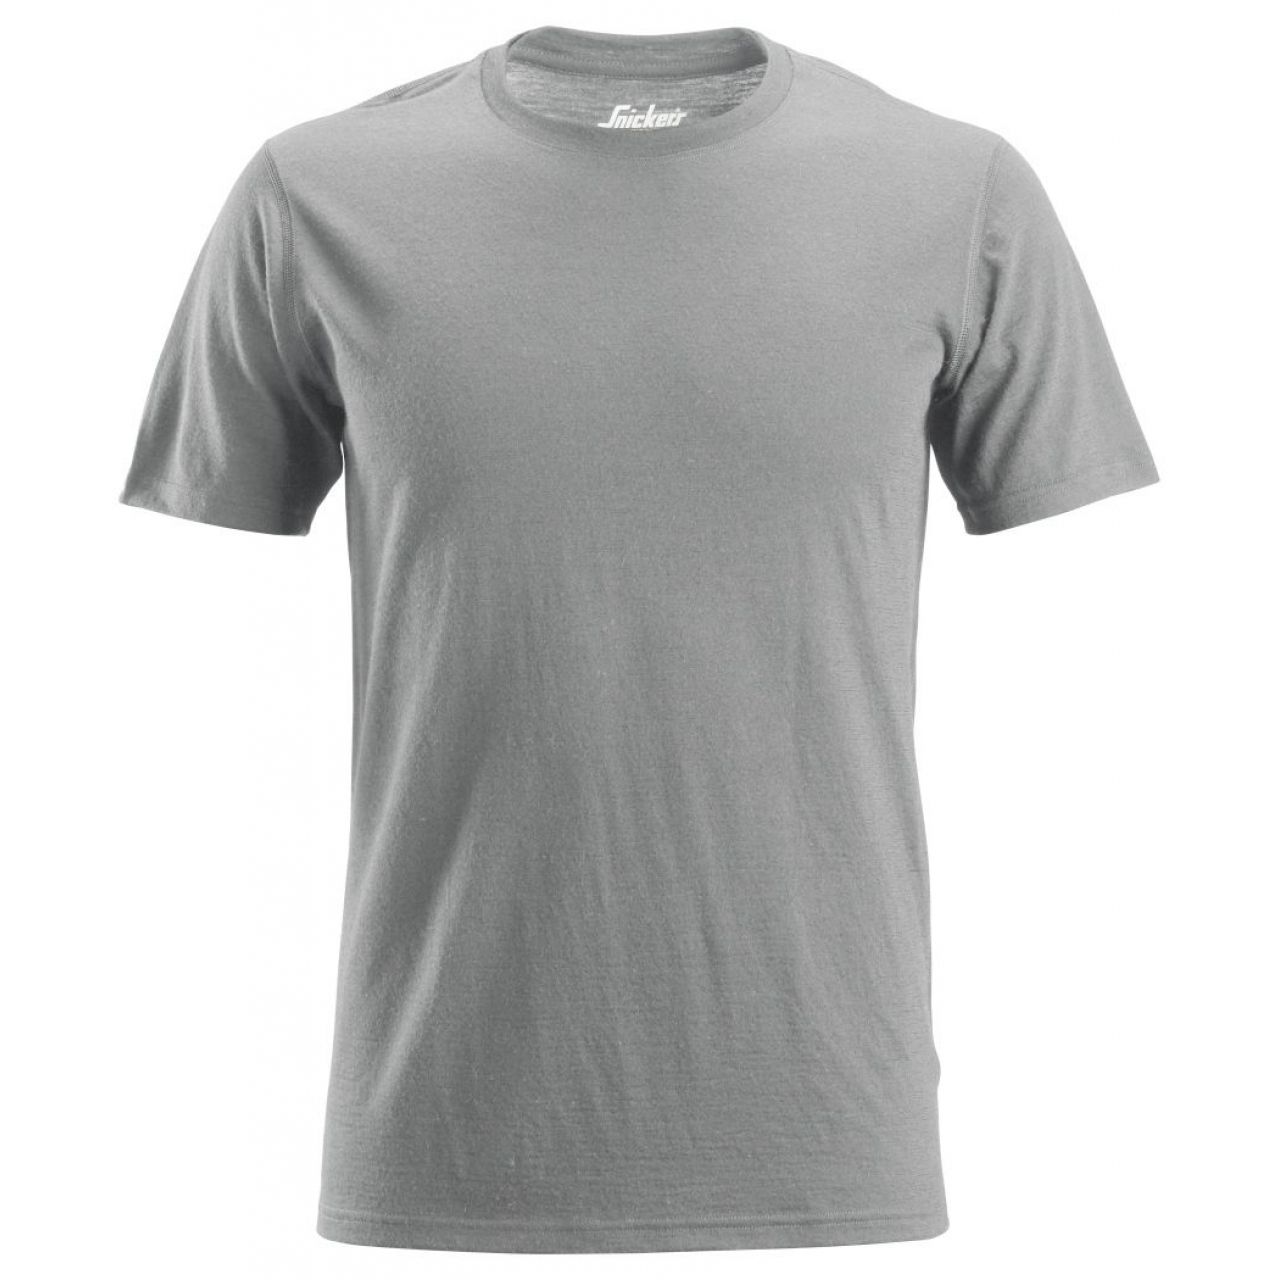 Camiseta lana AllroundWork gris melange talla XXL